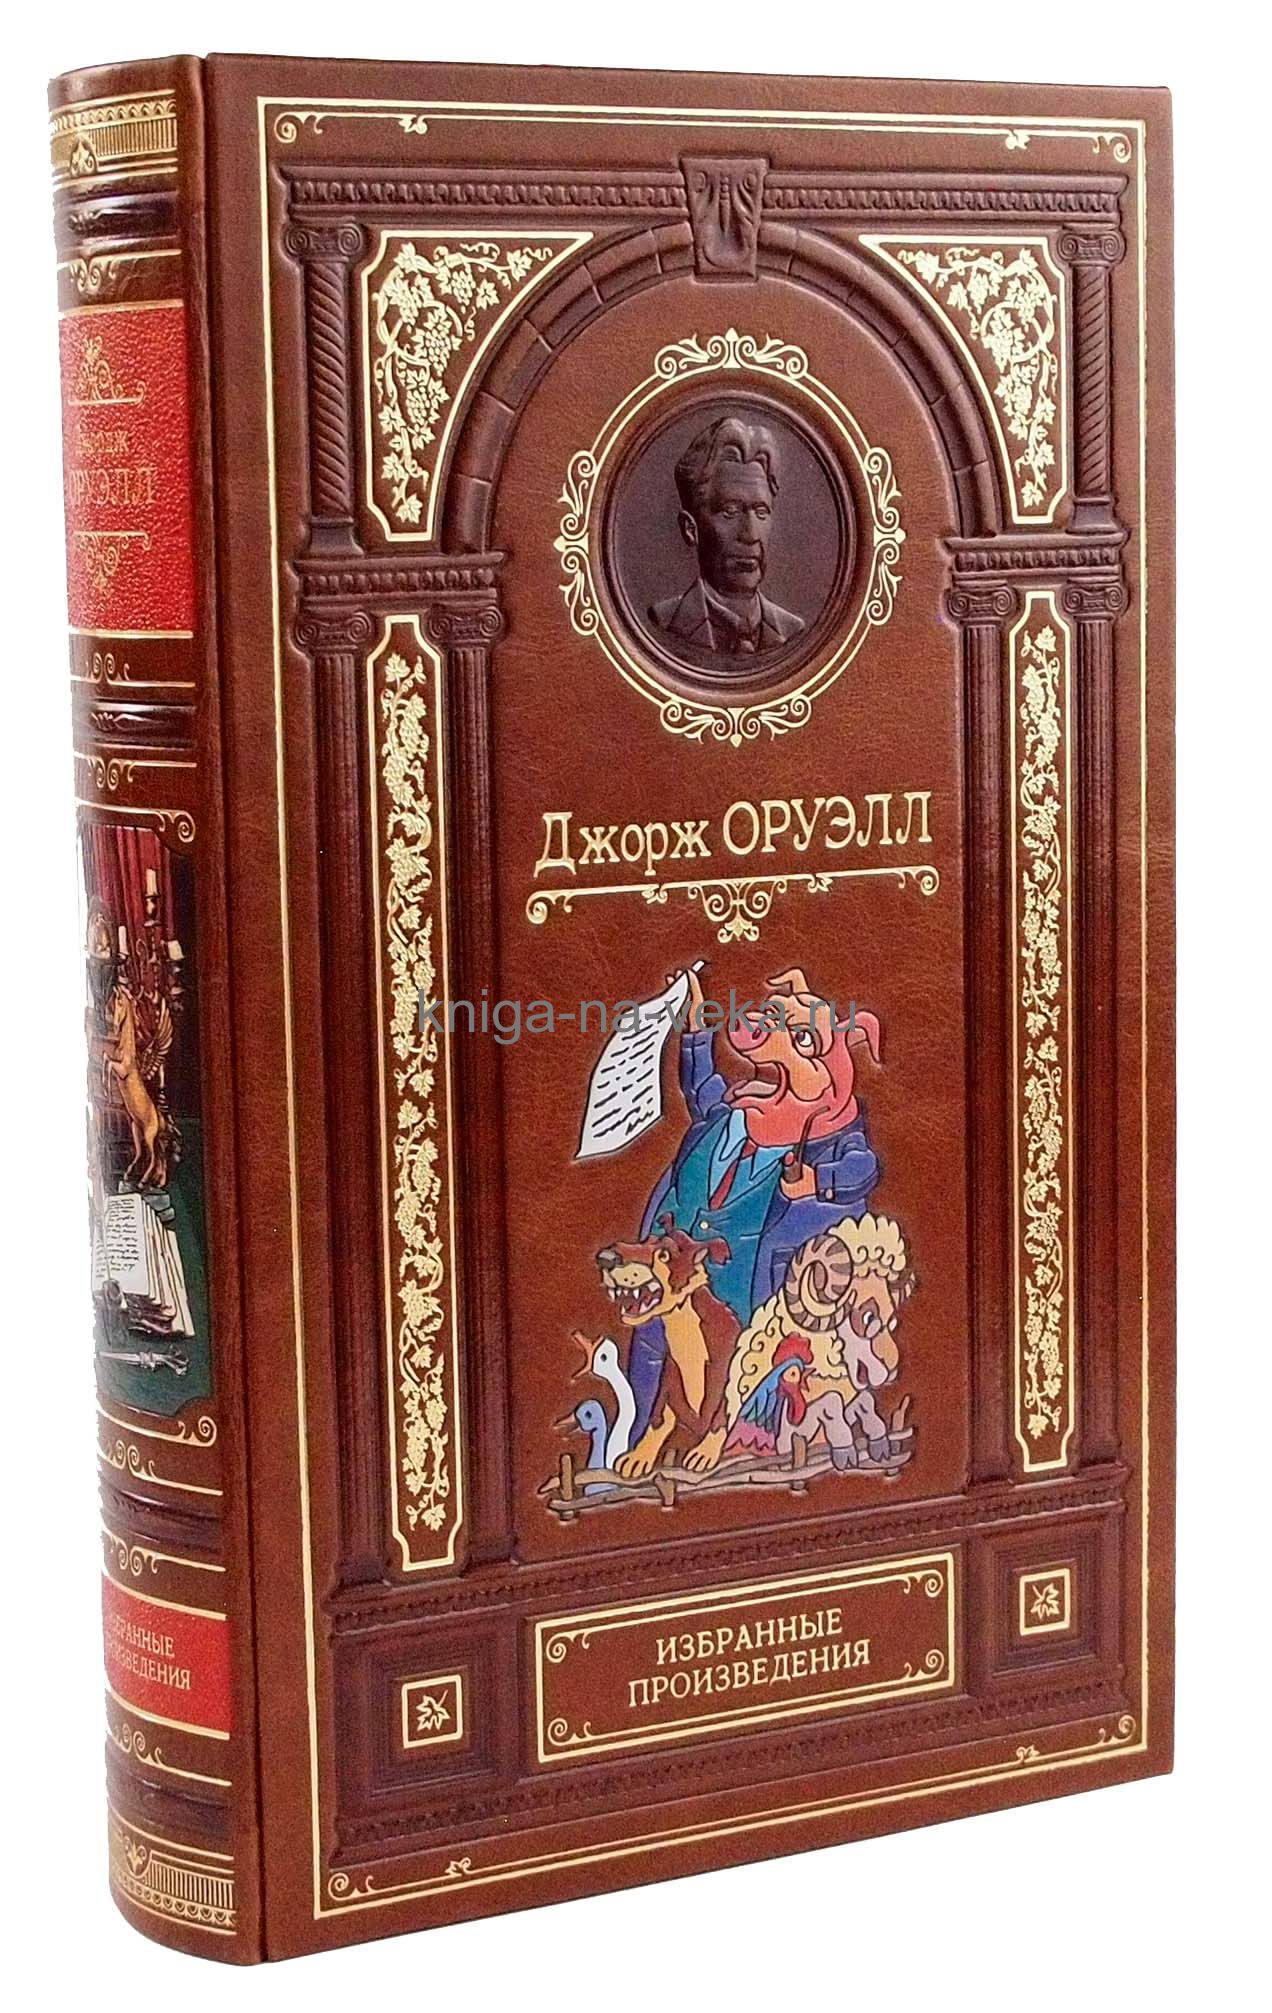 Подарочная кожаная книга Д. Оруэлл "Избранные произведения"